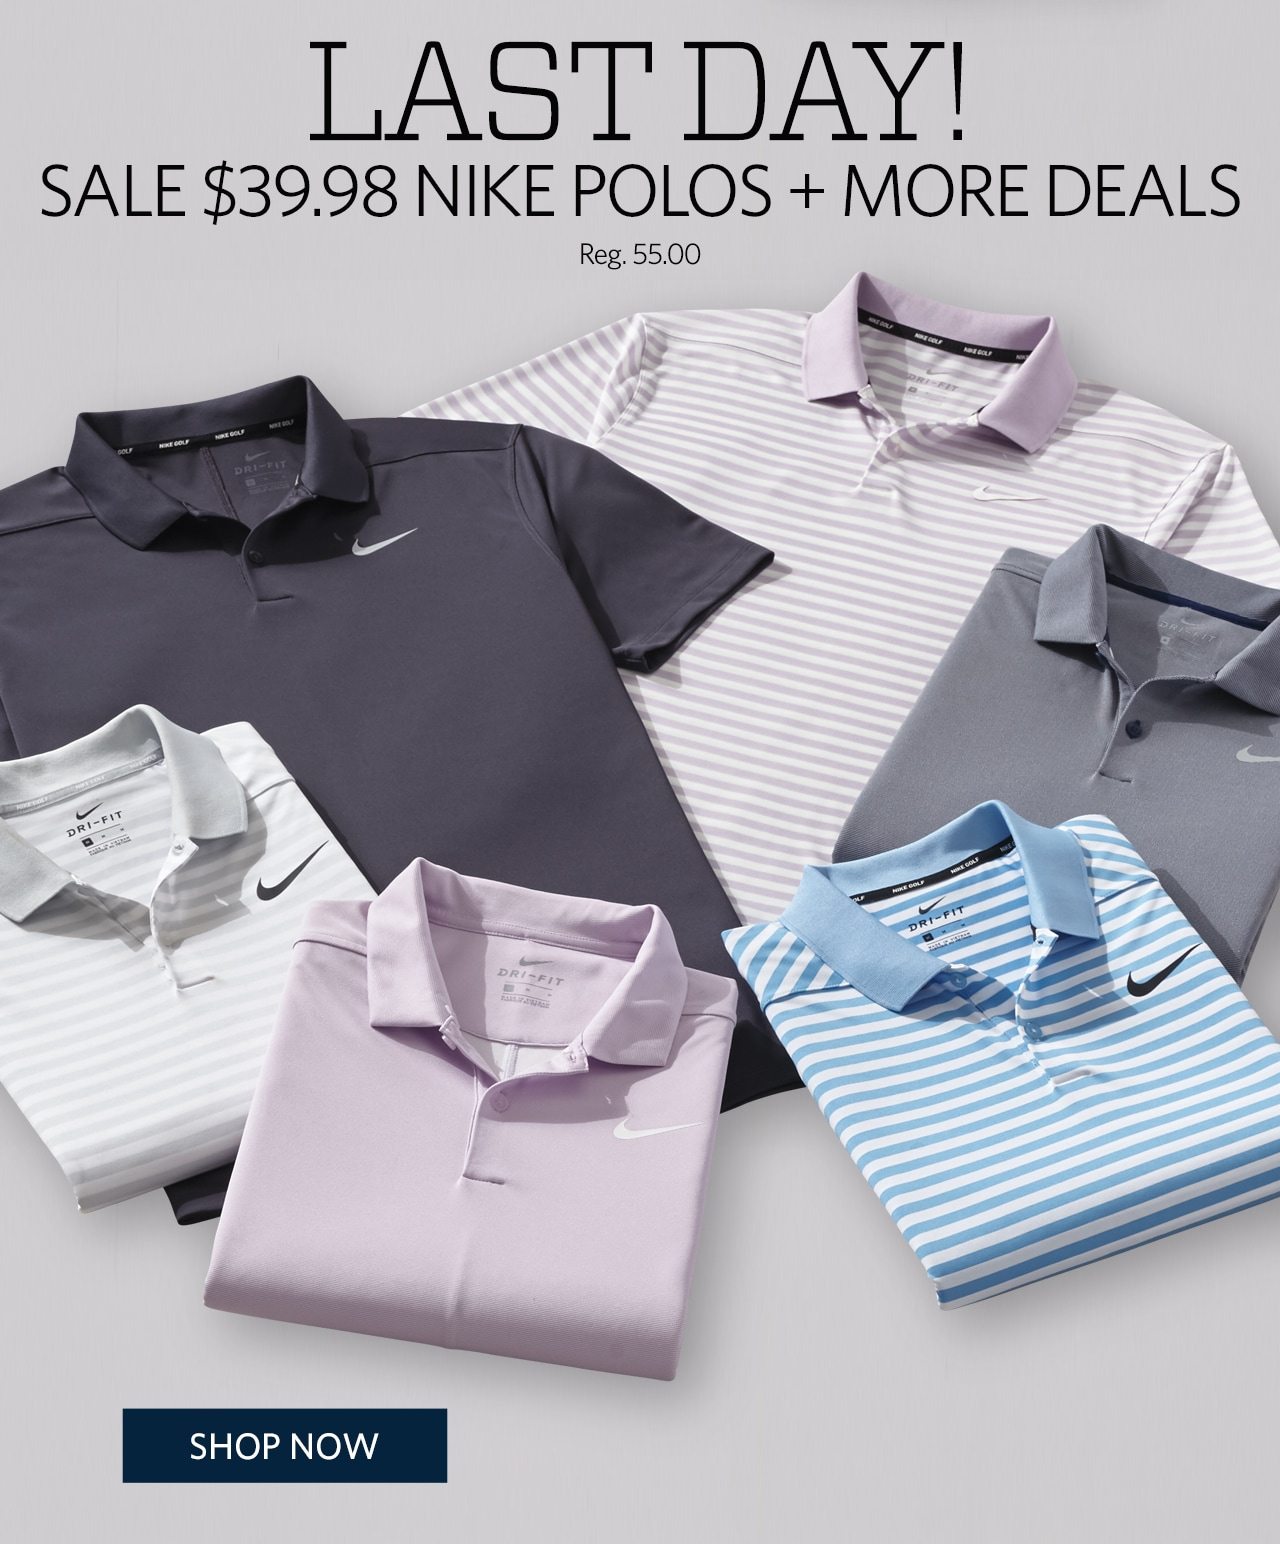 LAST DAY! Sale $39.98 Nike Polos + More Deals | Reg. 55.00 | SHOP NOW